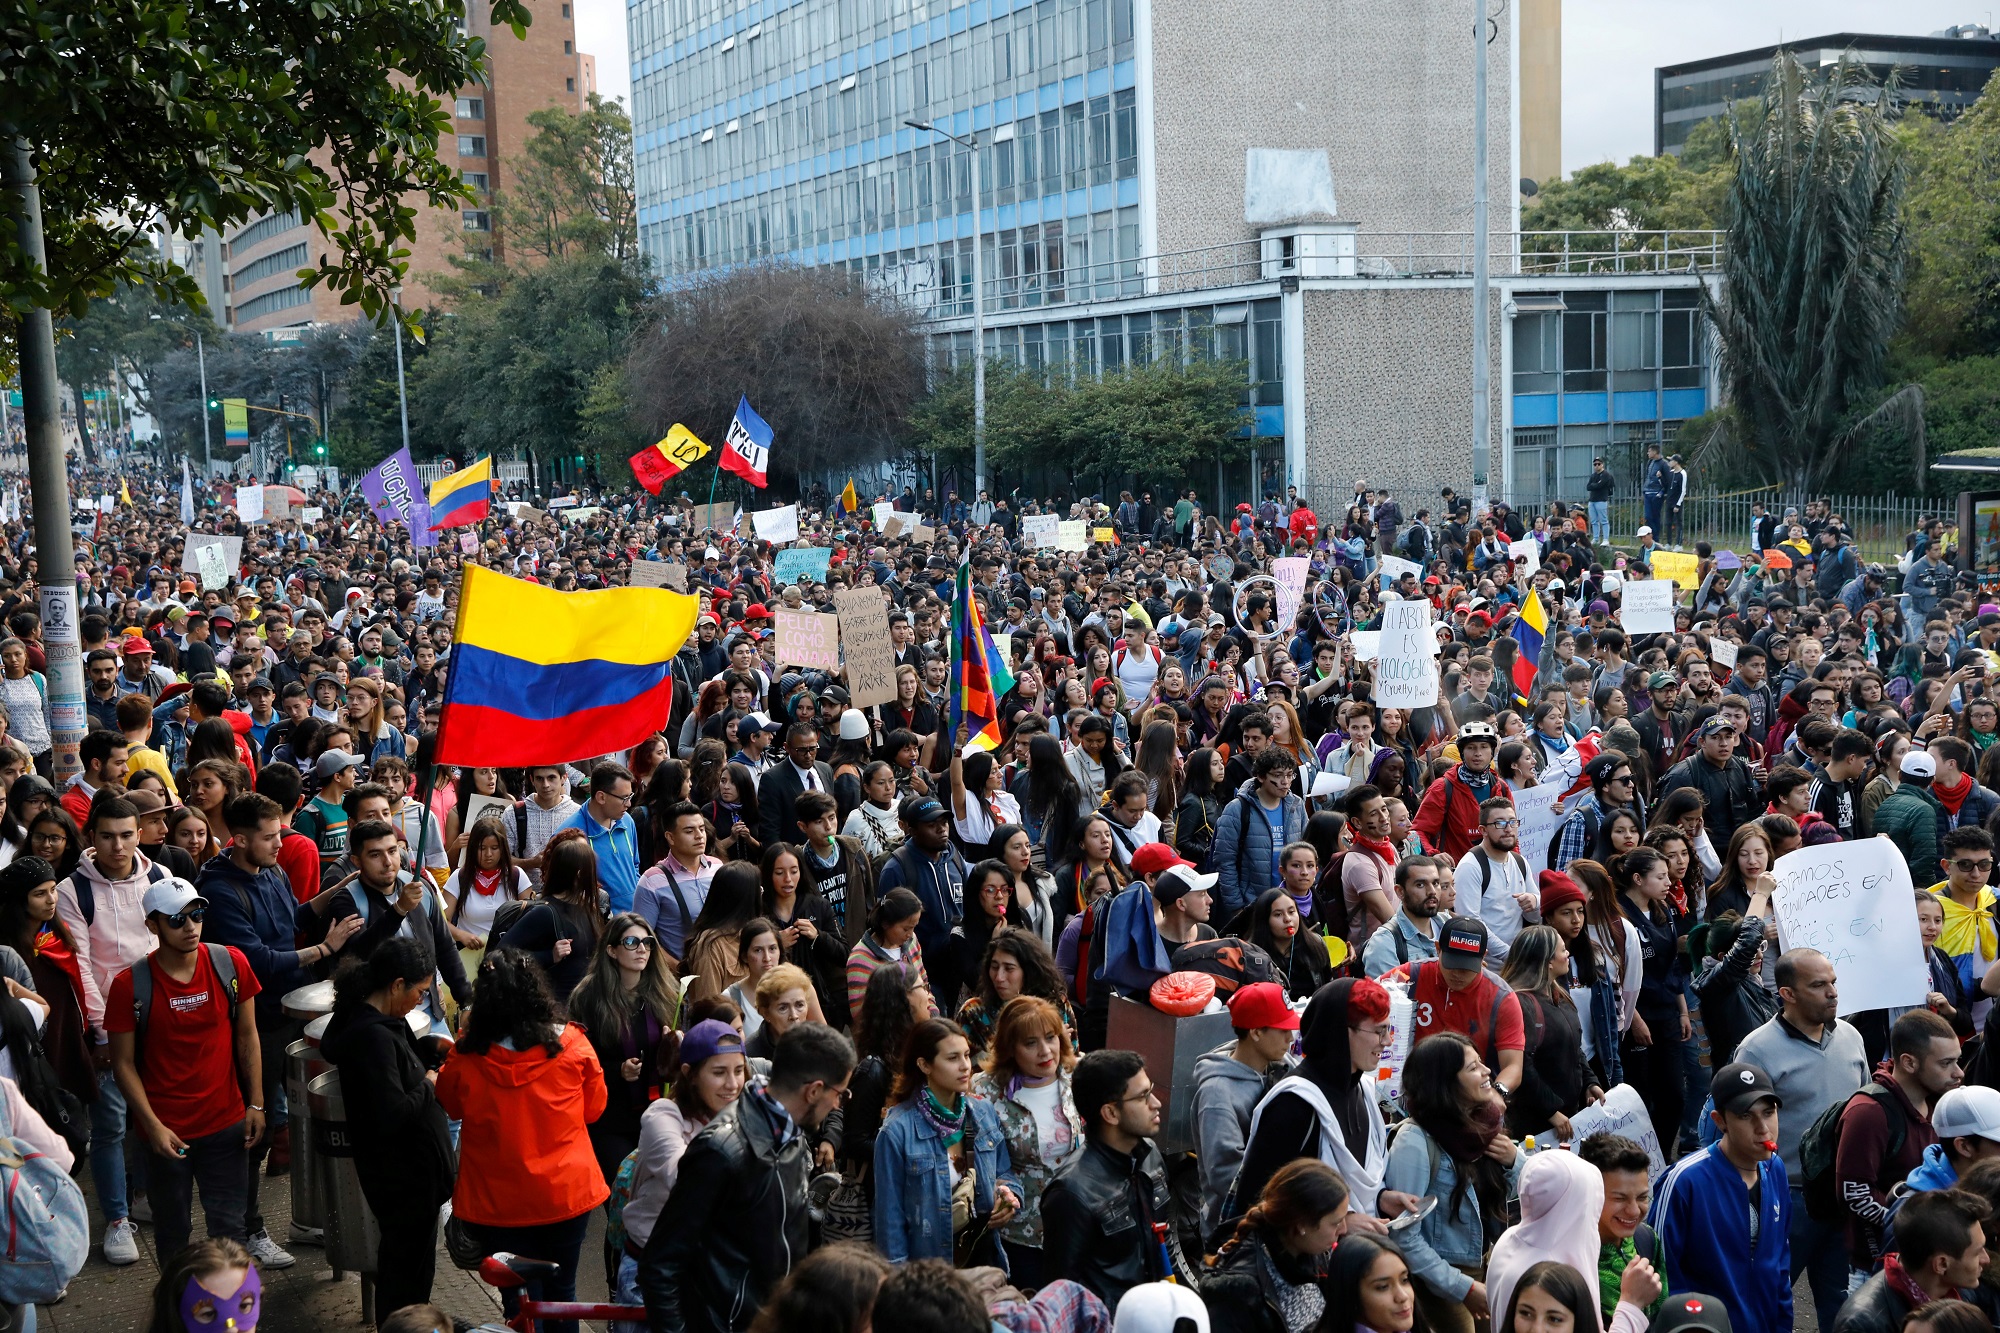 Las protestas amenazan confianza de los inversionistas en Colombia